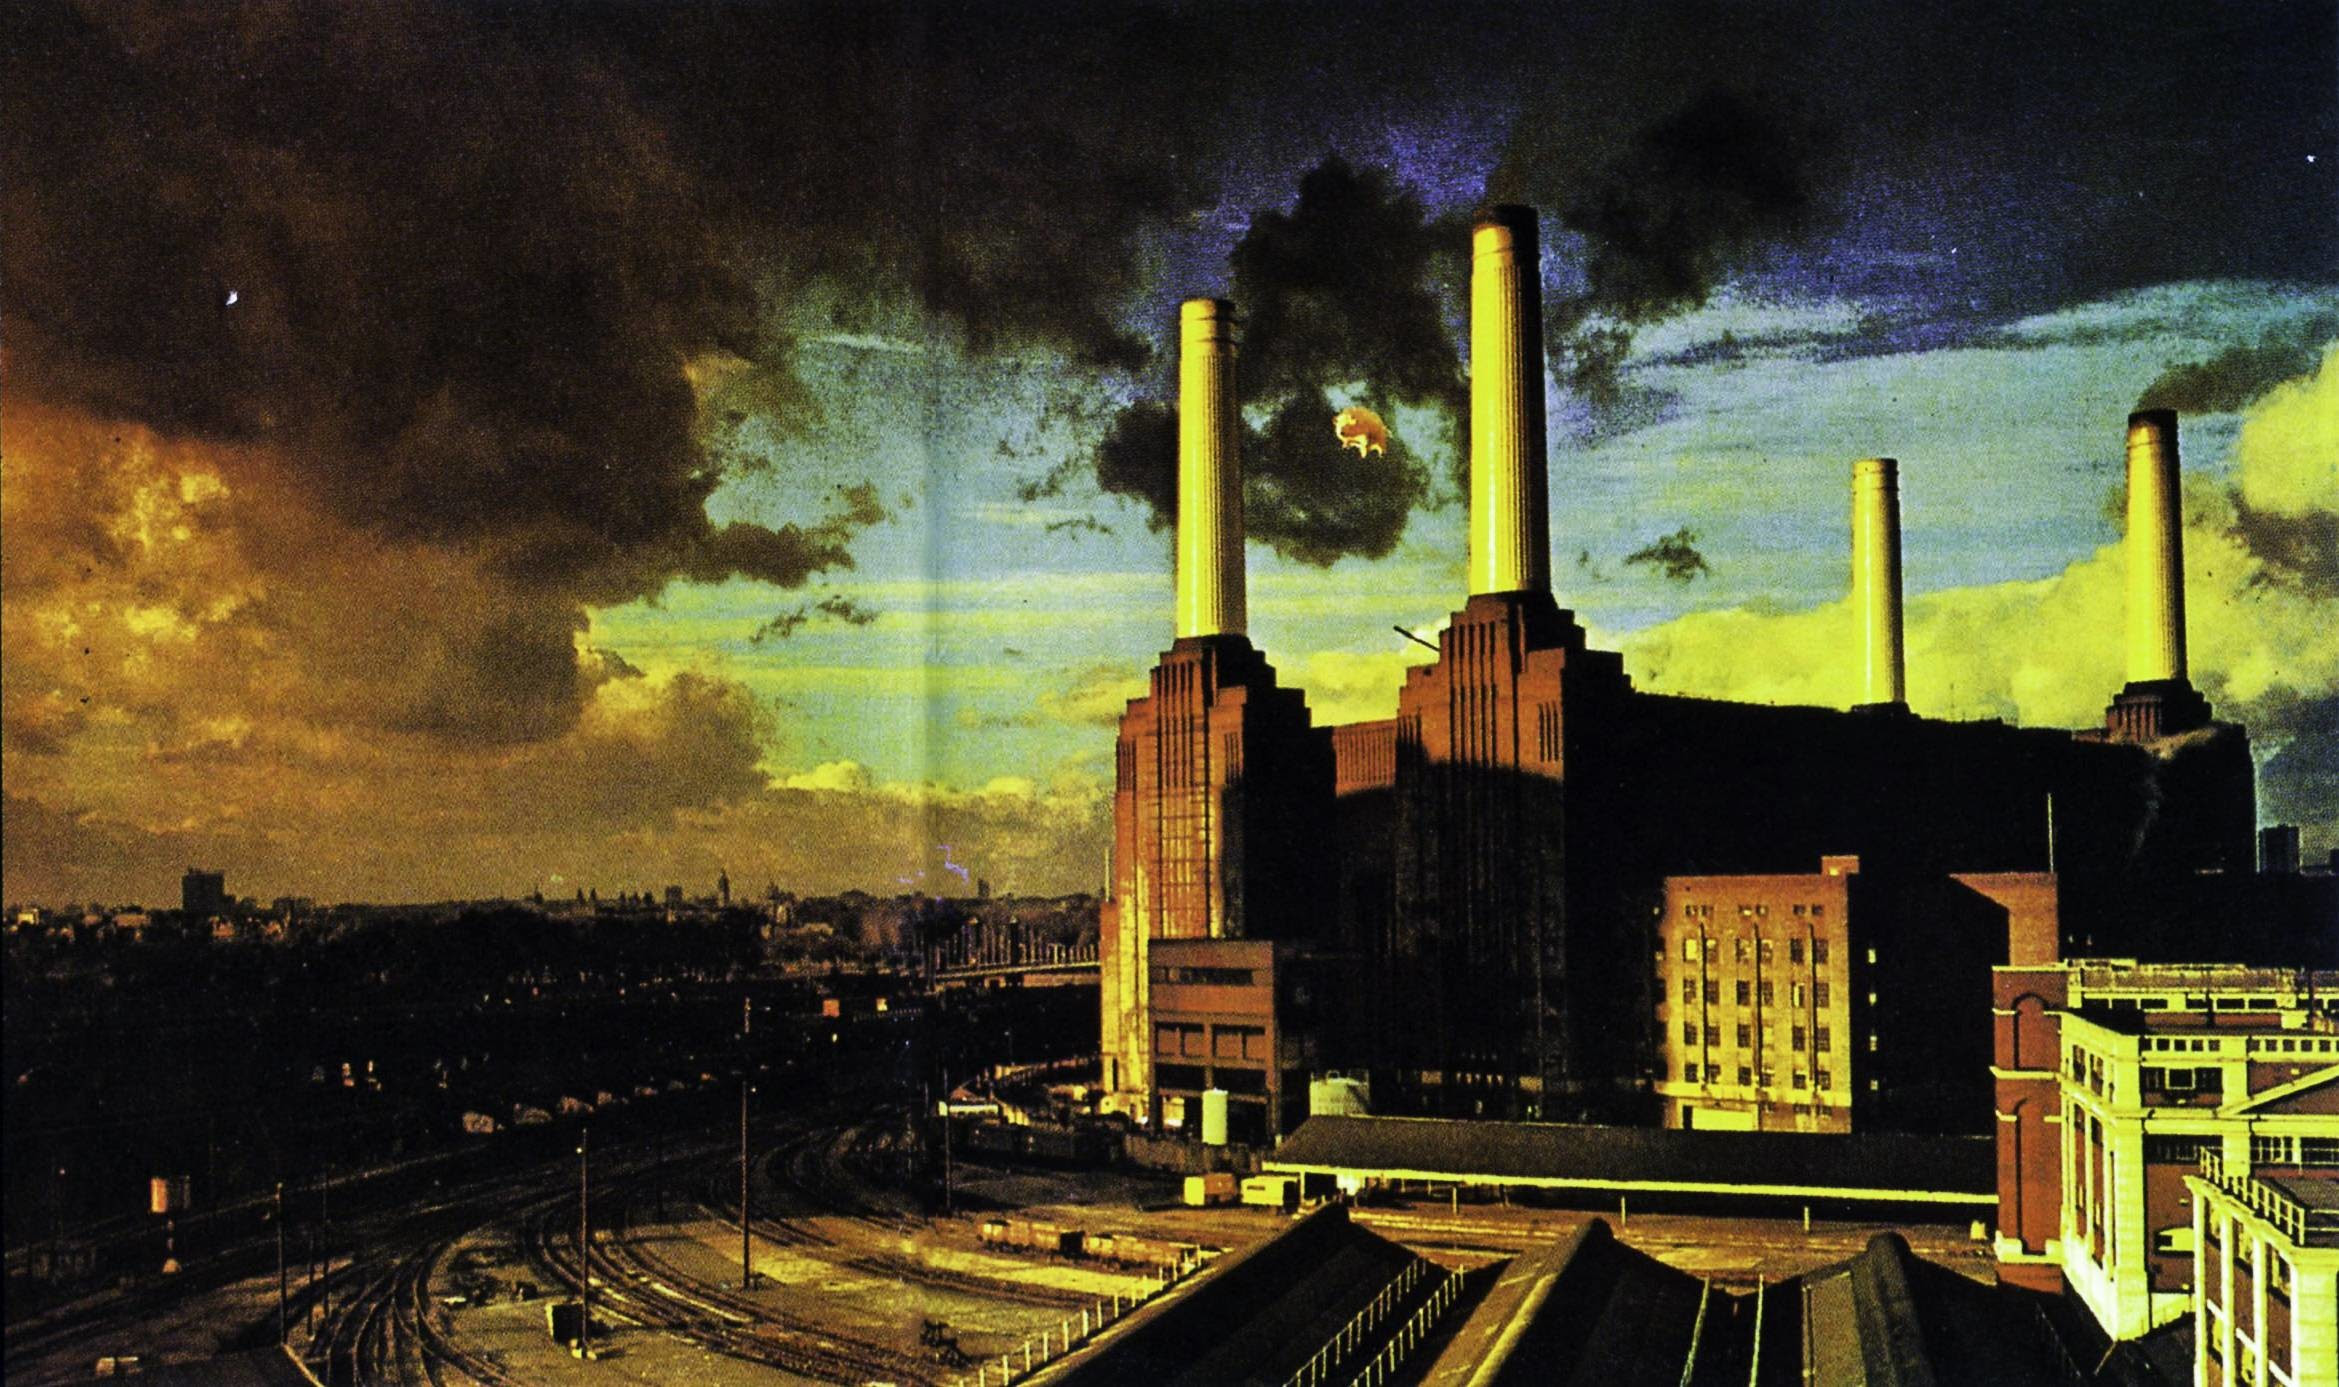 Download 80 Background Pink Floyd HD Terbaru